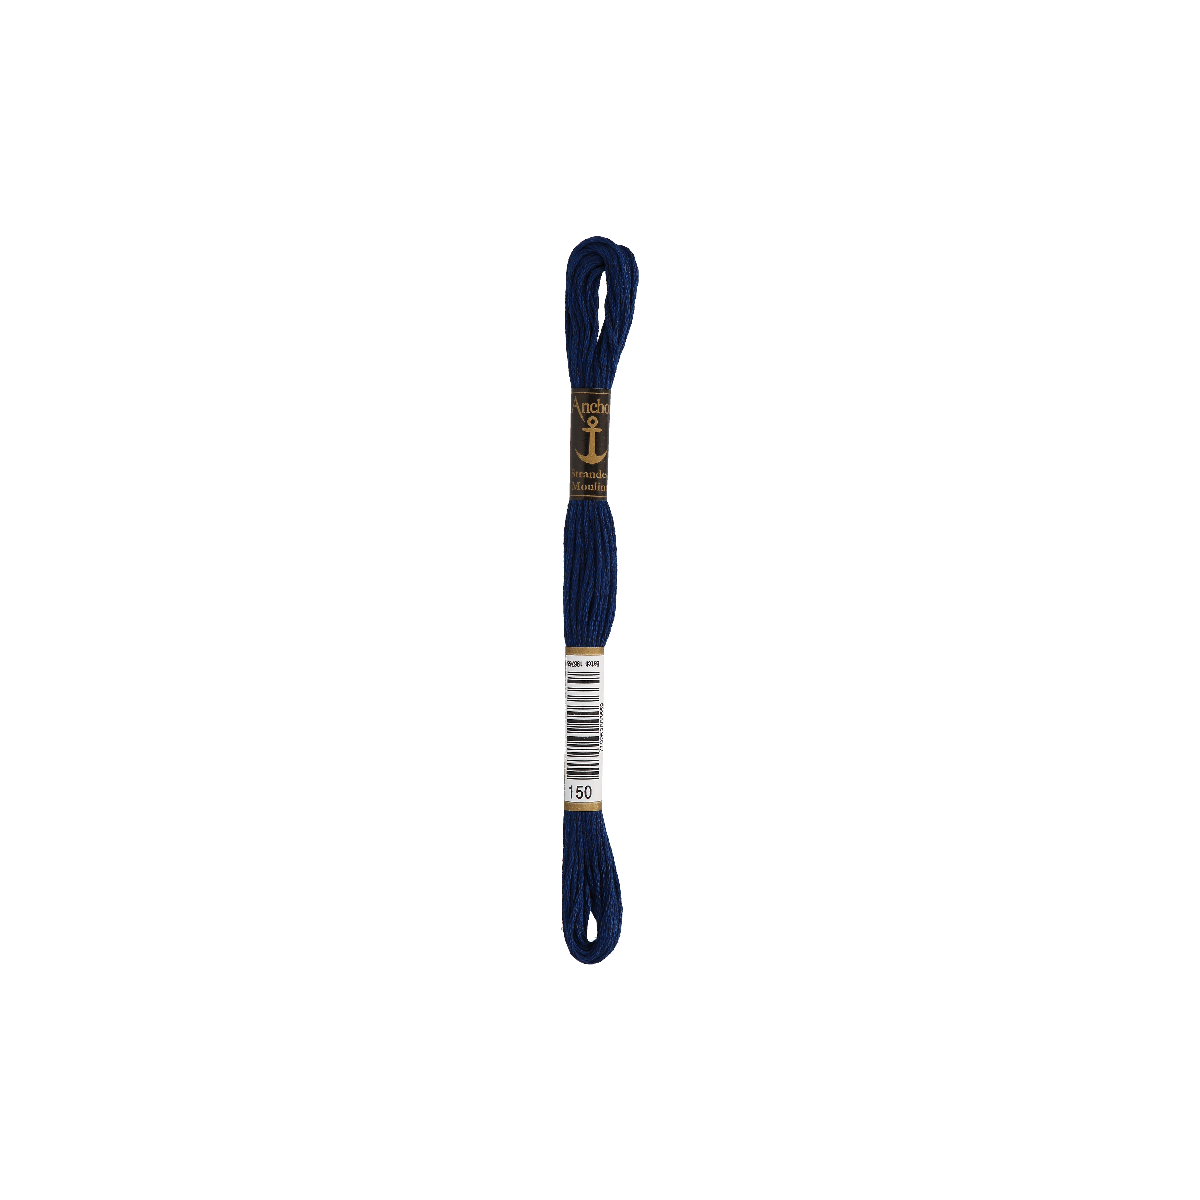 Anchor Sticktwist 8m, blu notte, cotone, colore 150, 6 fili